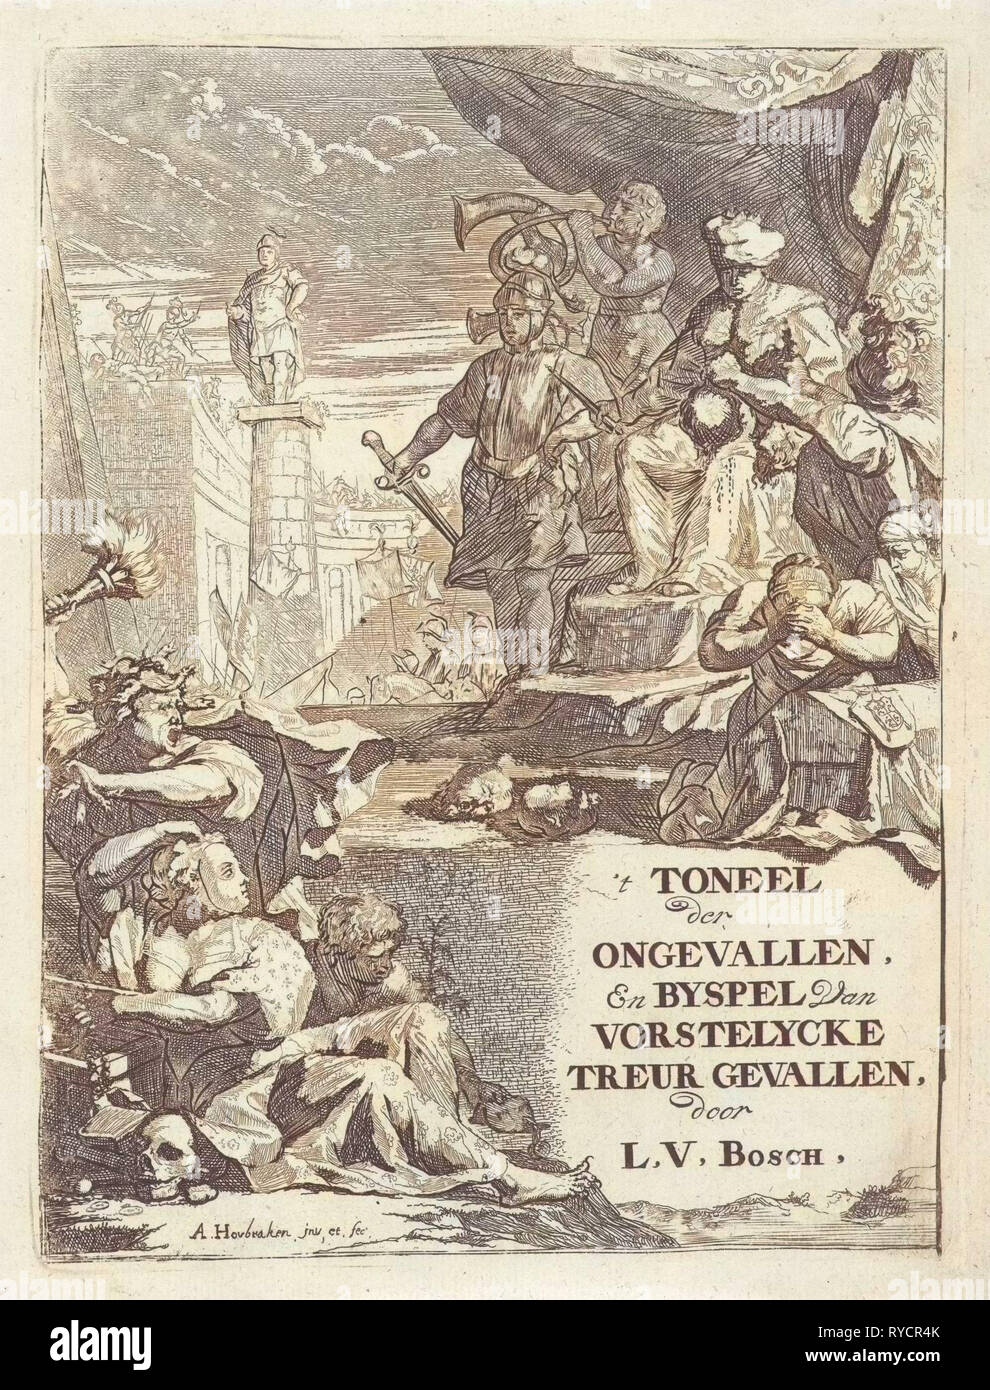 Têtes coupées pour un prince sur un trône, Arnold Houbraken, 1699 Banque D'Images